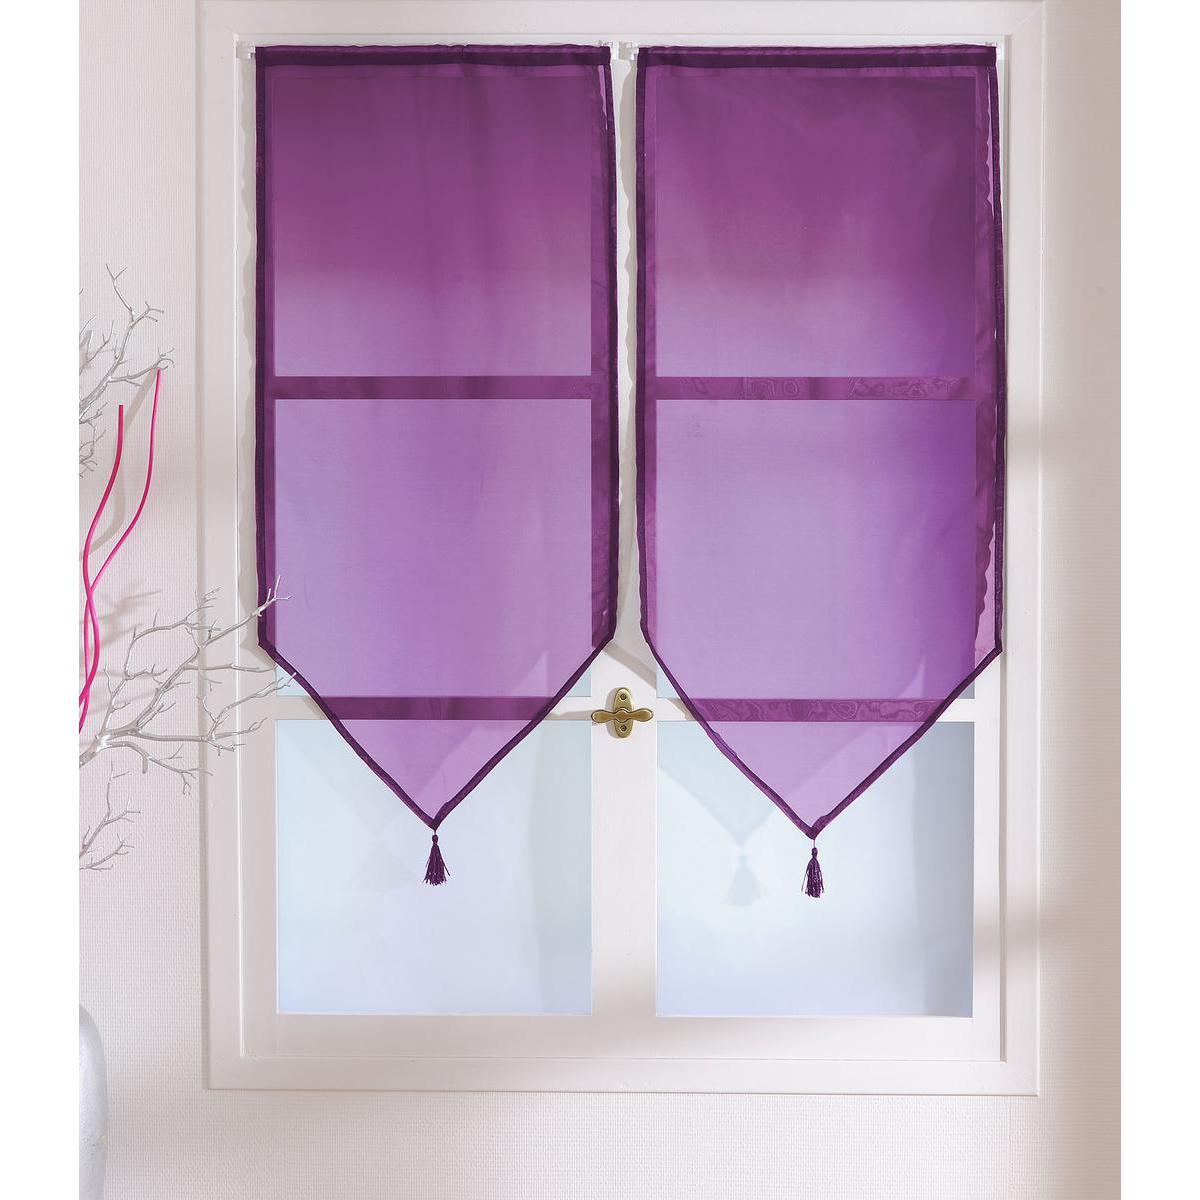 Paires de vitrages - 100% polyester - 60 x 90 cm - Violet